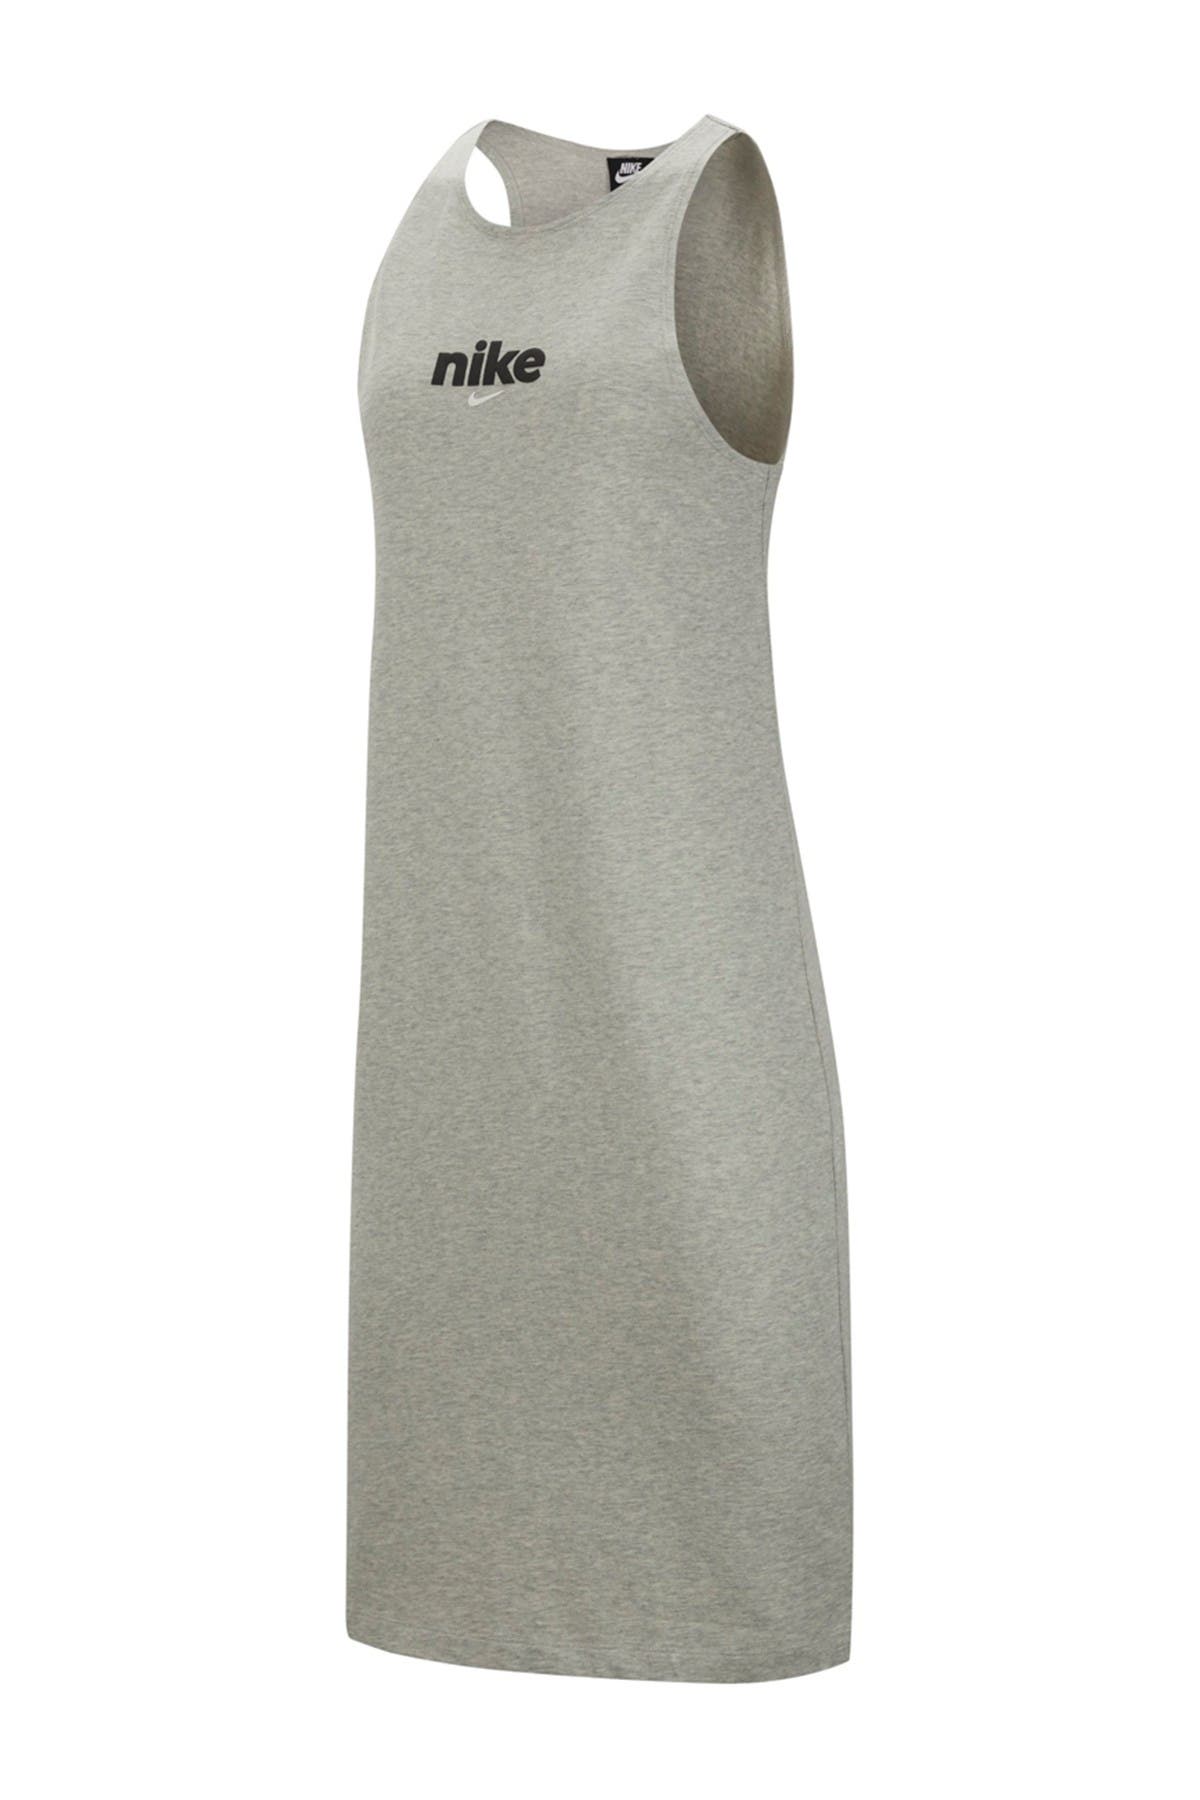 Nike Dresses for Women | Nordstrom Rack